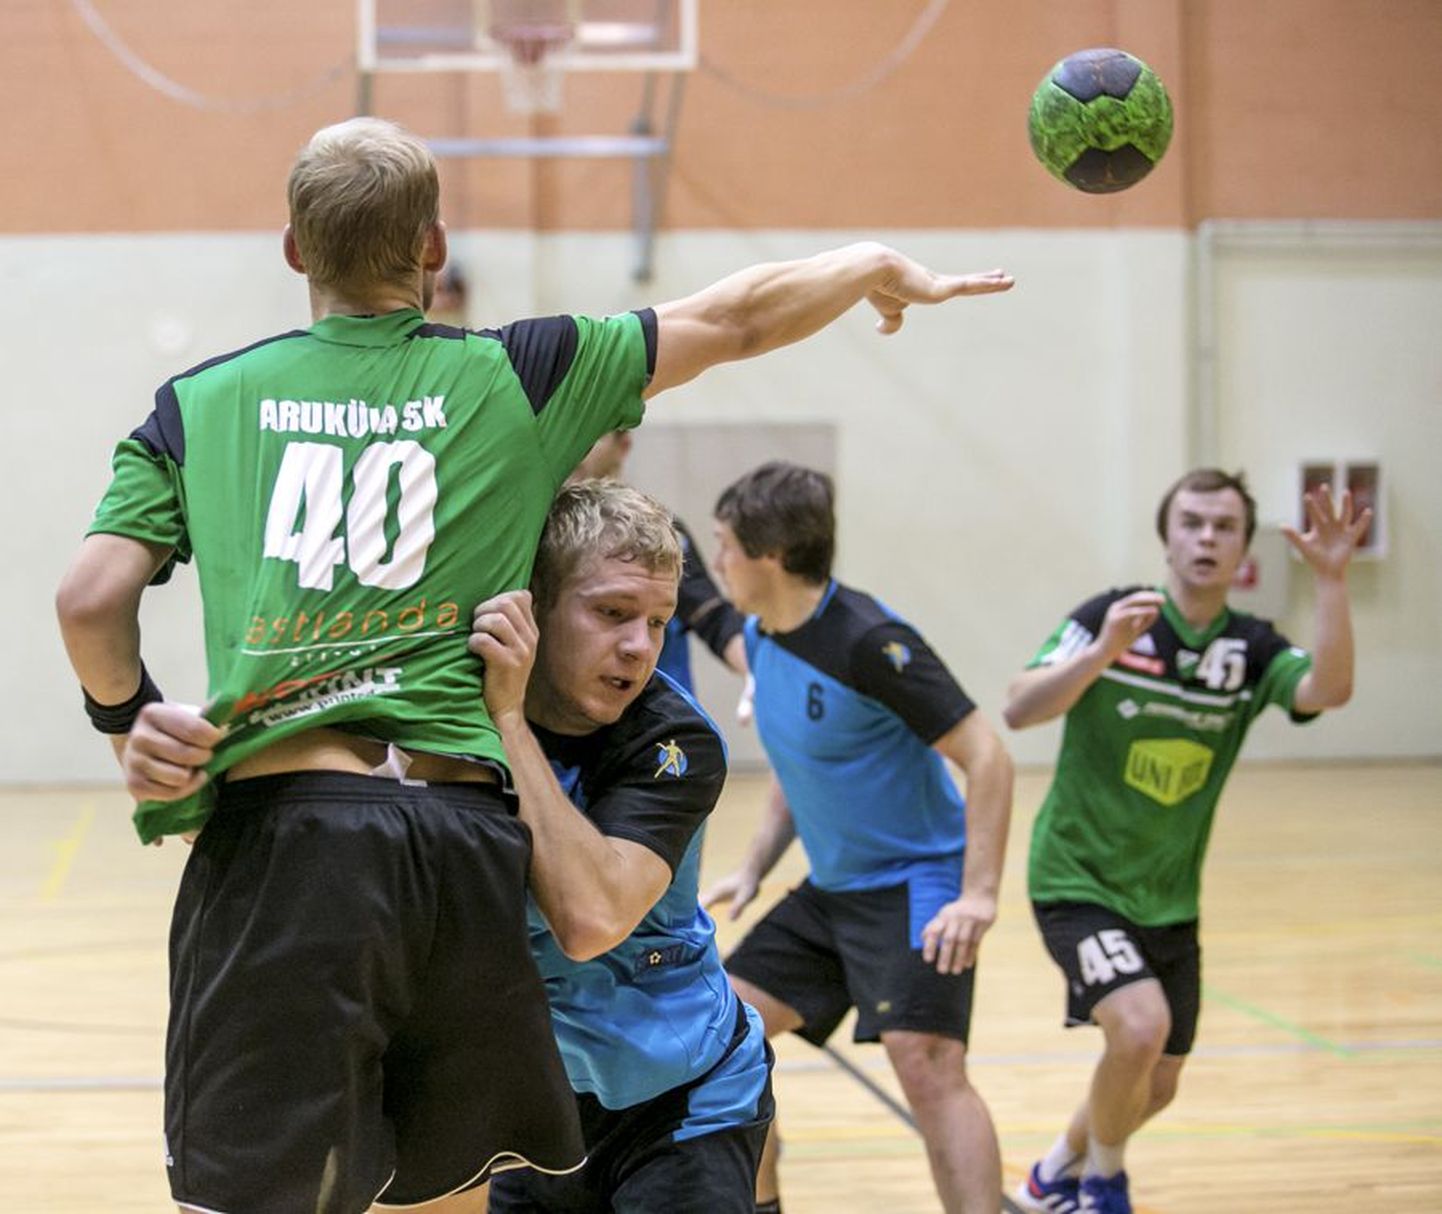 Täna kell 19 kohtuvad Viljandi spordihoones Eesti käsipalli meistrivõistluste veerandfinaali esimeses mängus Viljandi HC ja Aruküla SK.